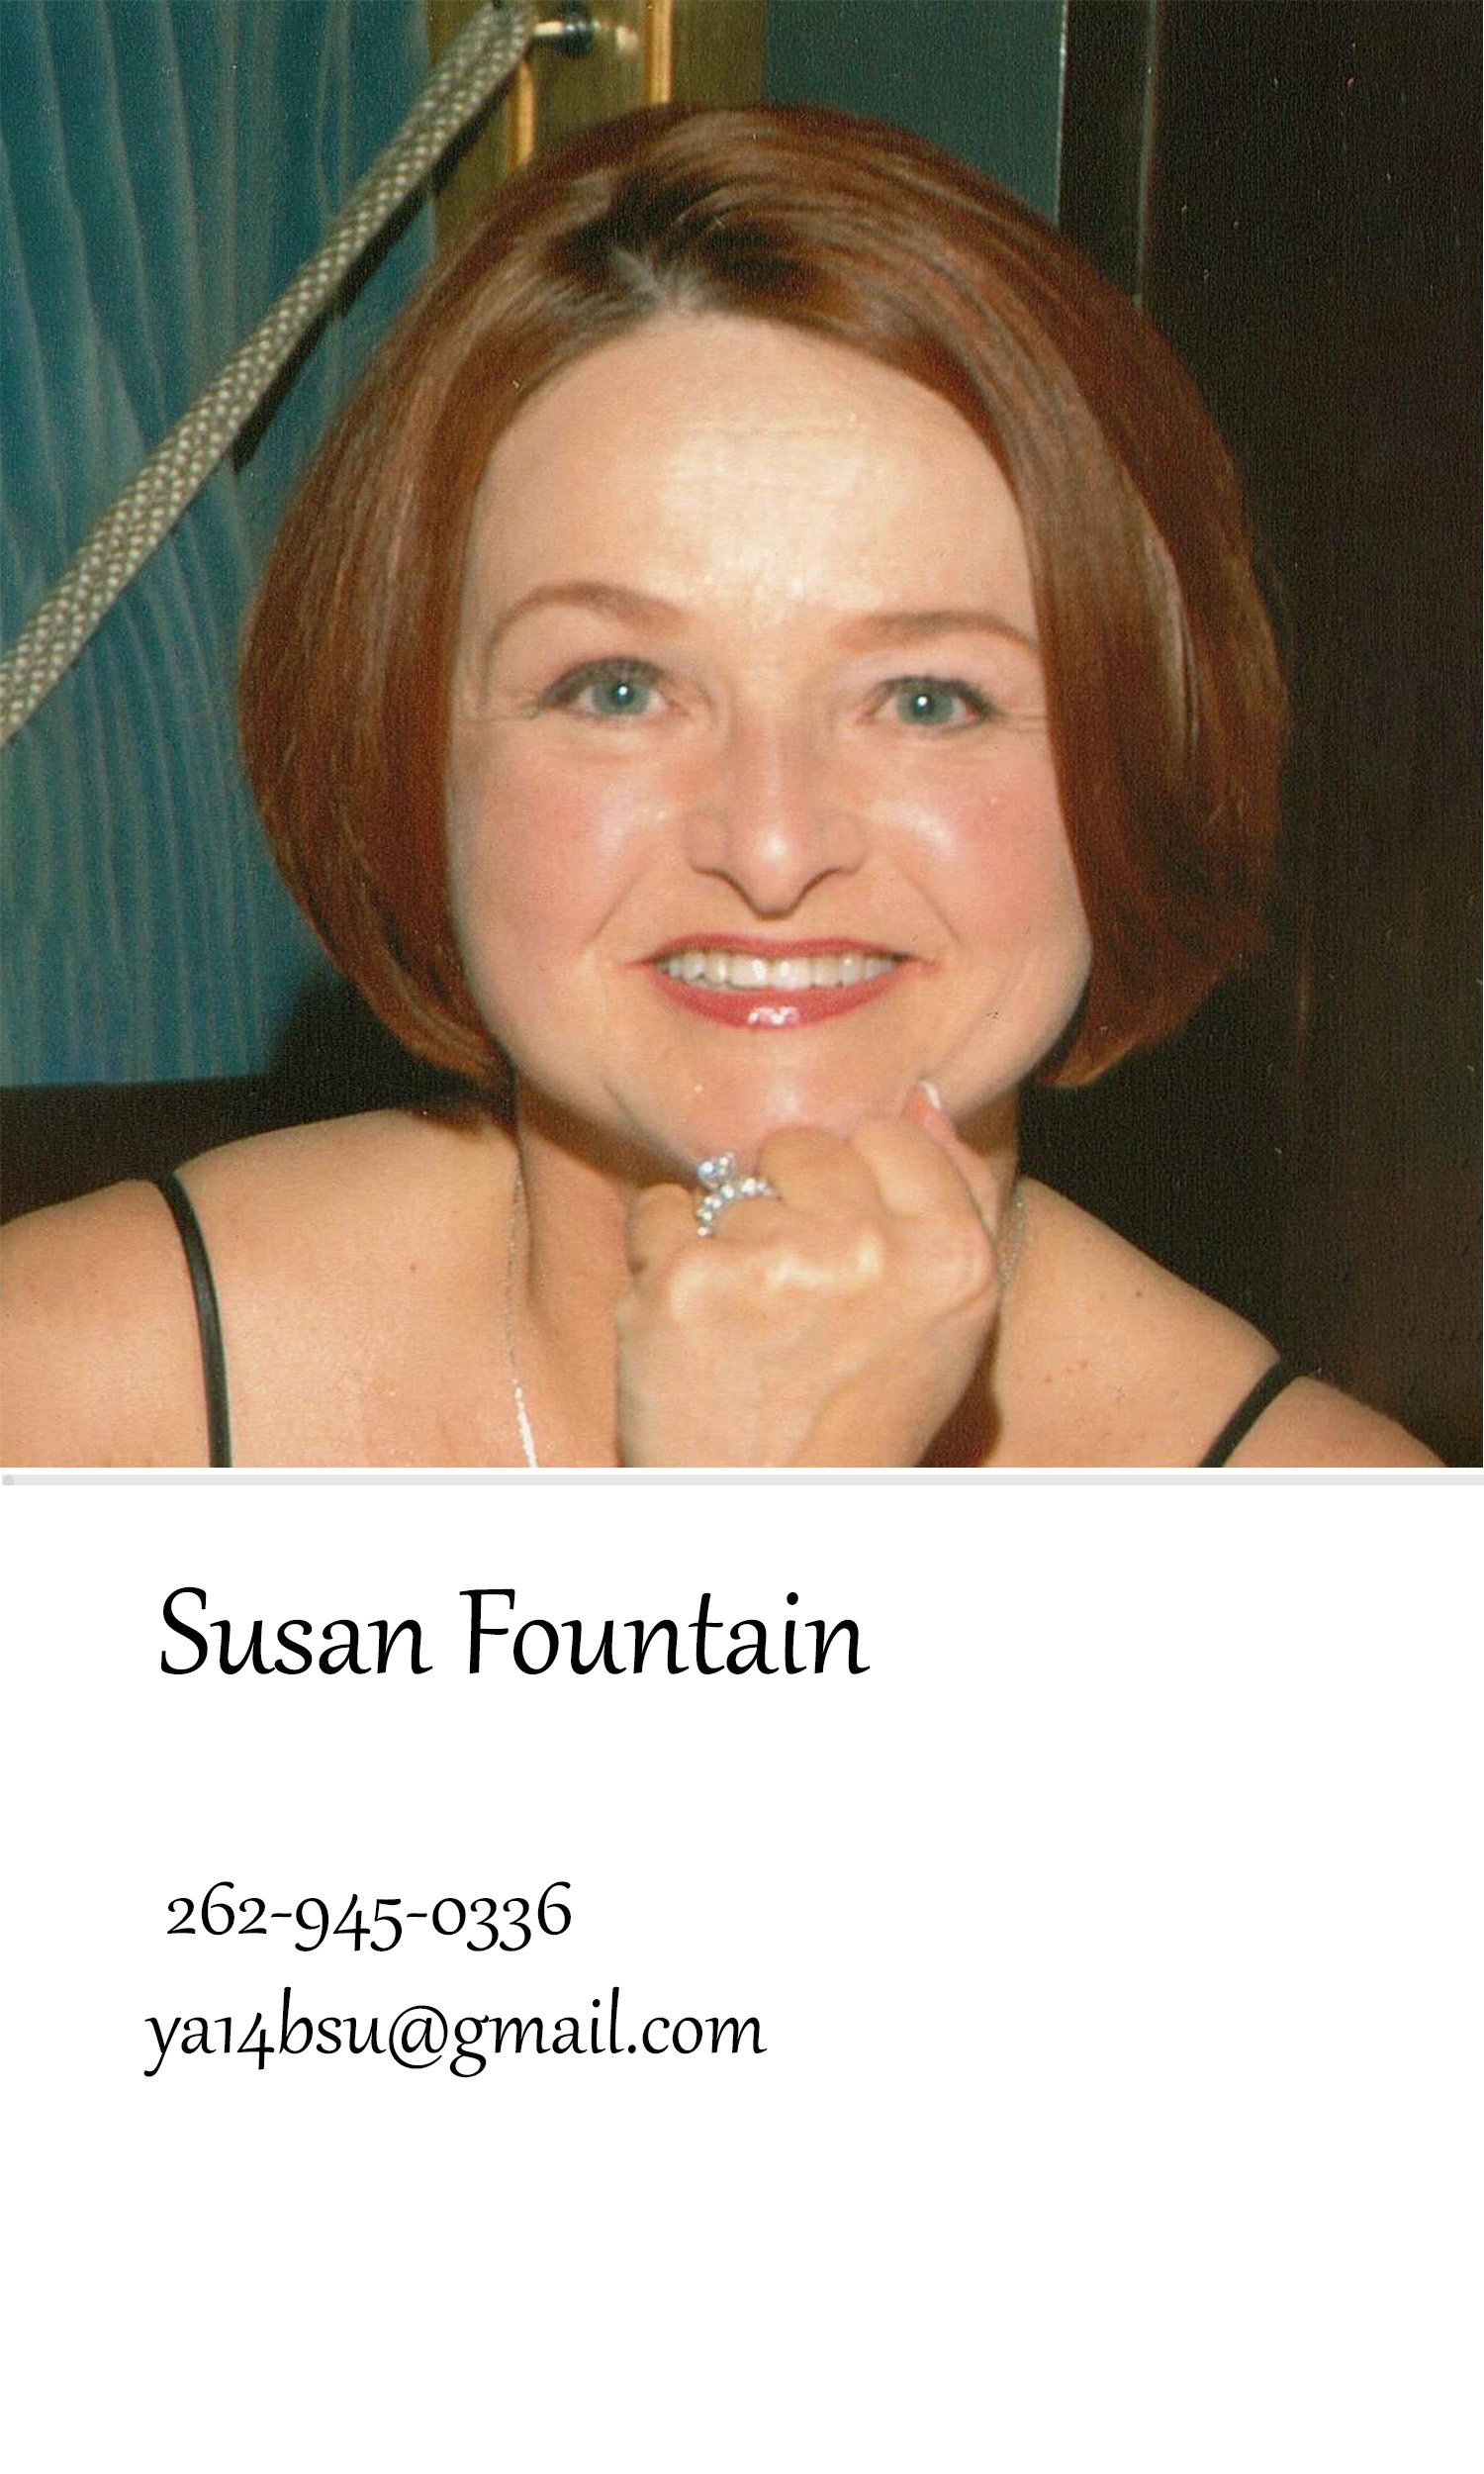 Susan Fountain.jpg